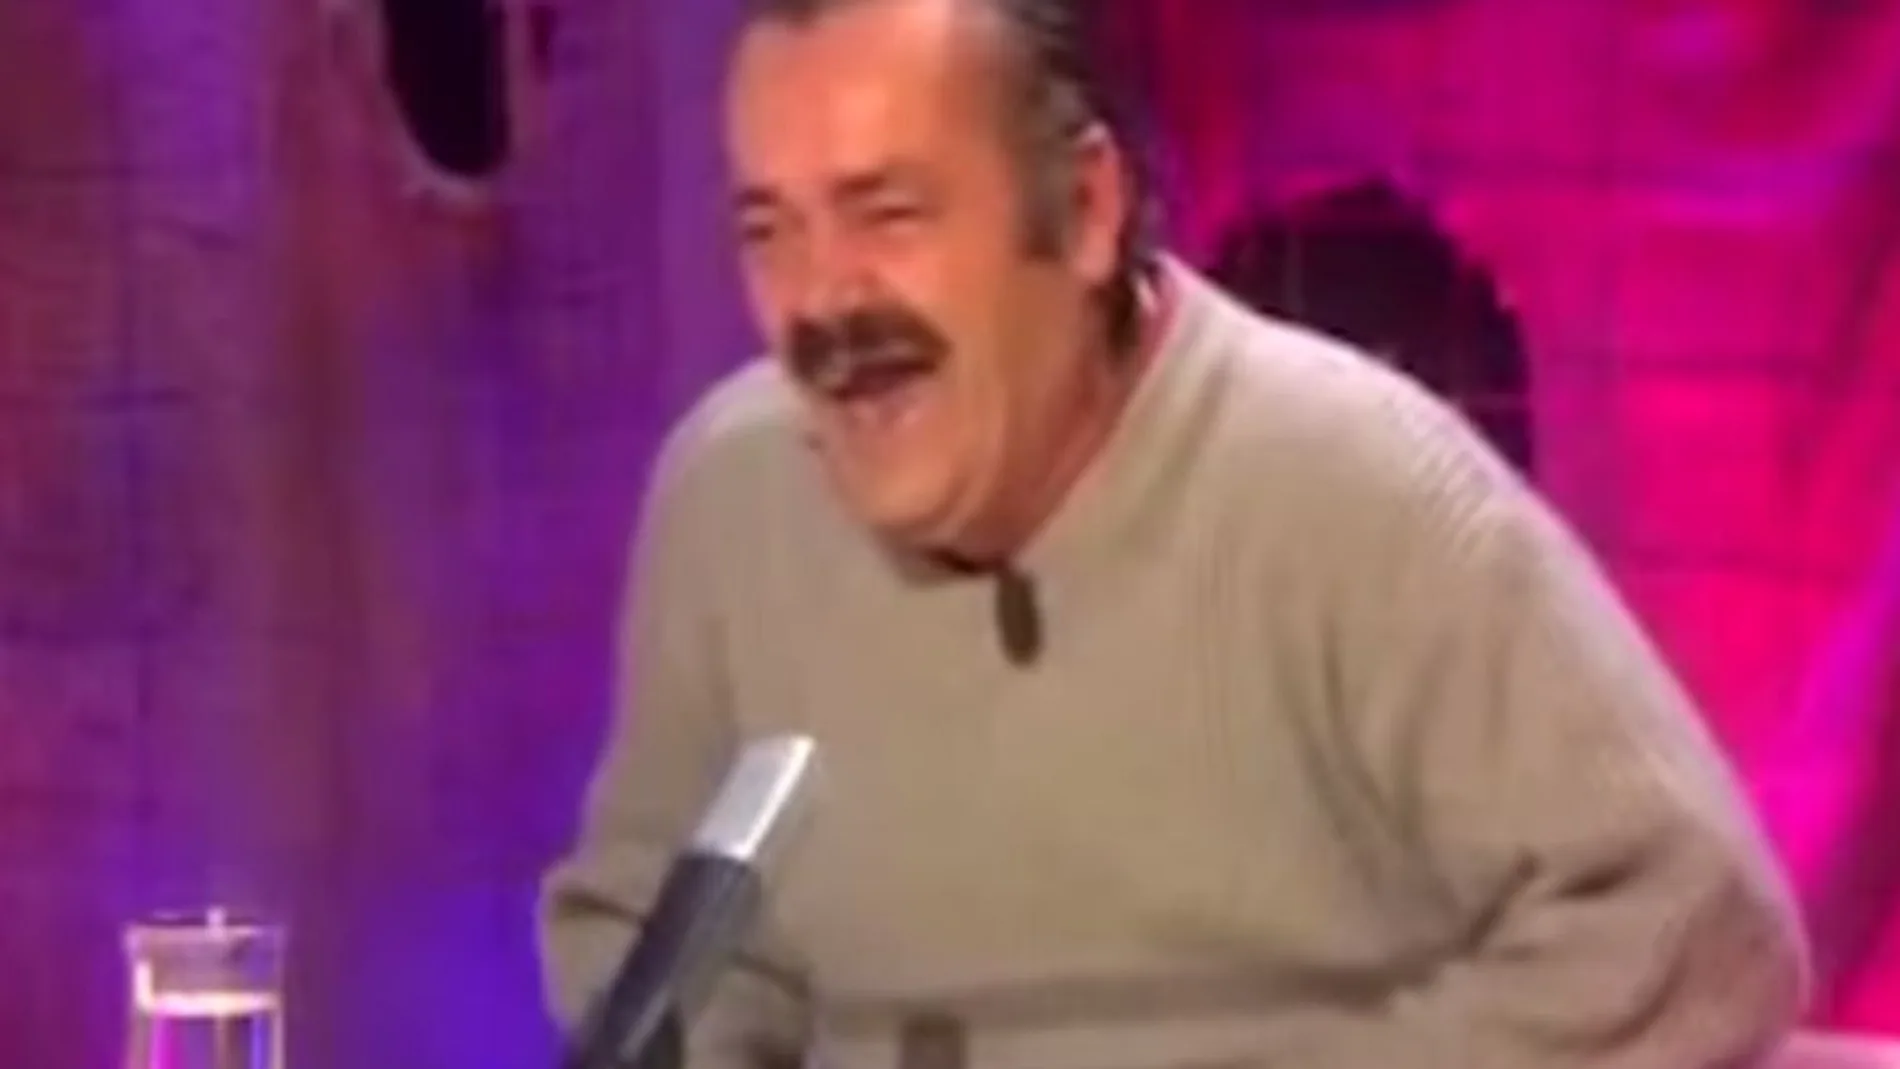 Juan Joya, "el risitas", en un fotograma del vídeo